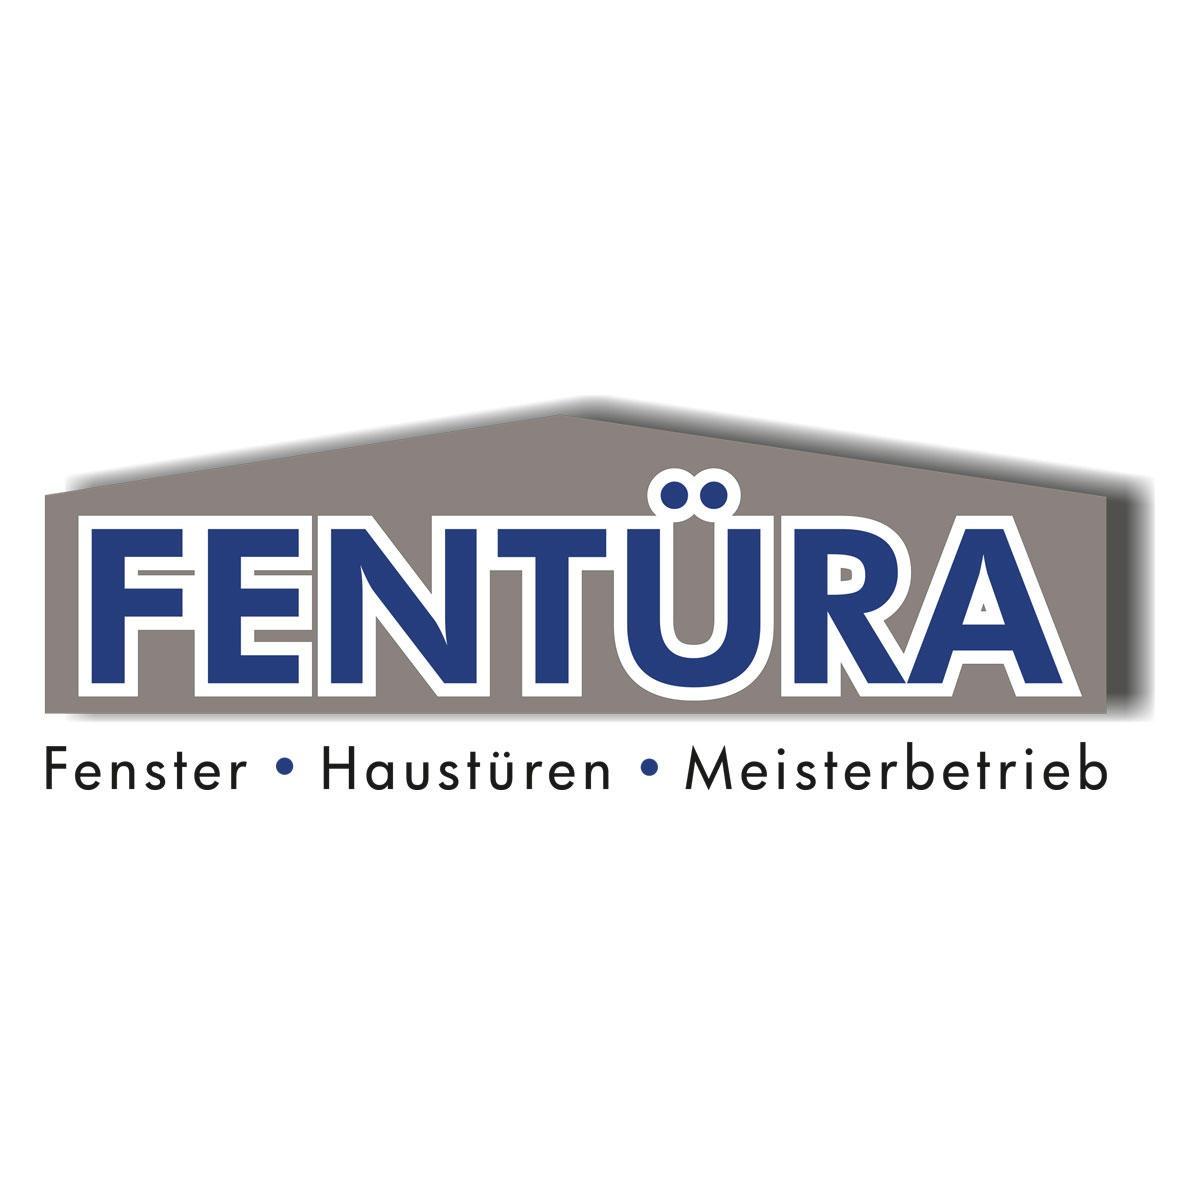 Bild zu Fentüra GmbH & Co. KG in Hagen in Westfalen